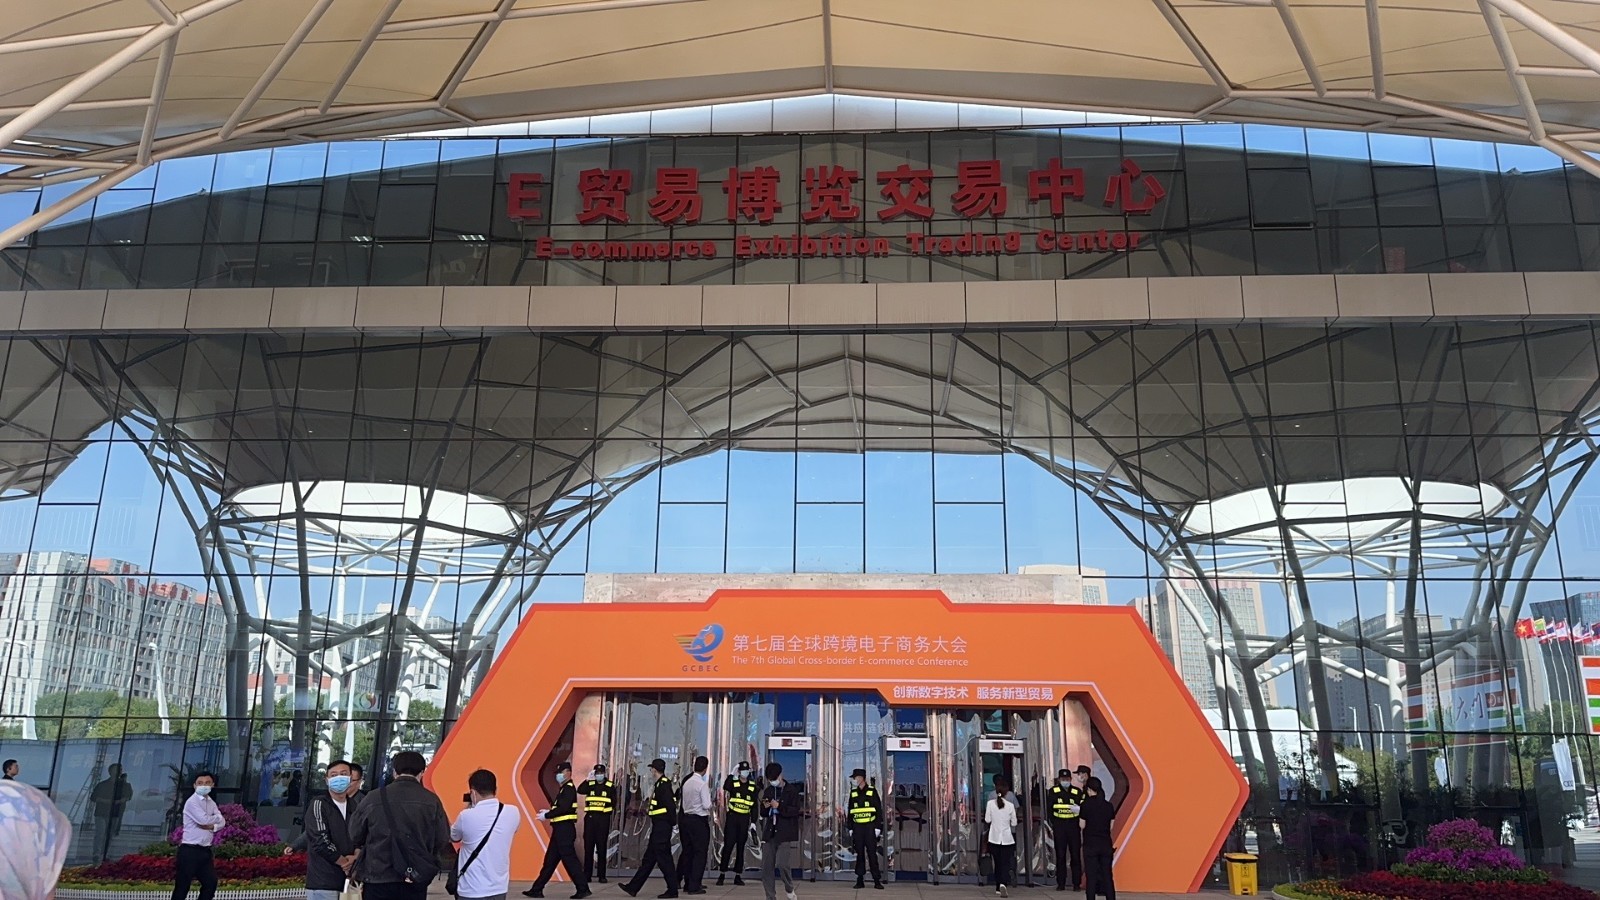 第七届全球跨境电商大会展览展示活动在郑州经开区开启